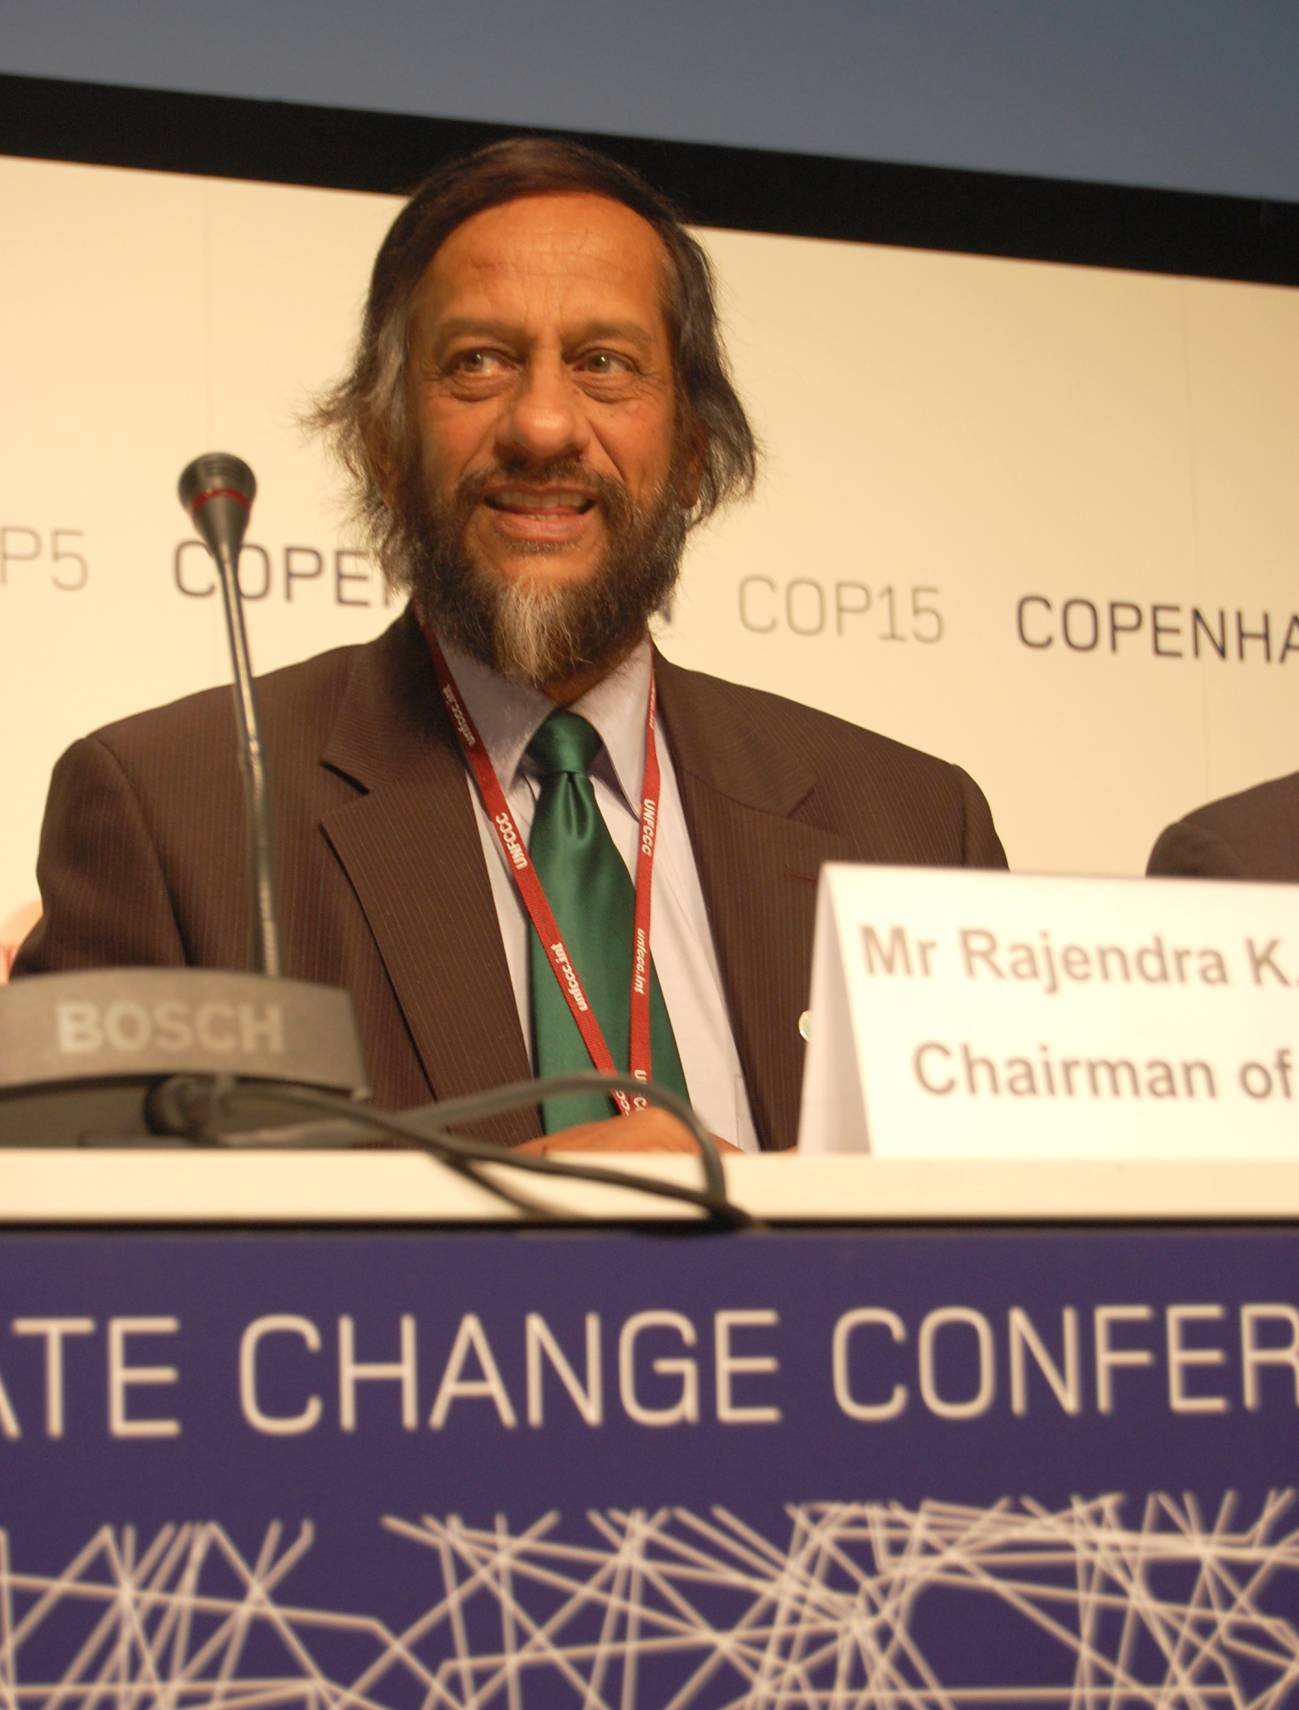 El IPCC establece un Programa de Educación sobre el Clima para países en vías de desarrollo